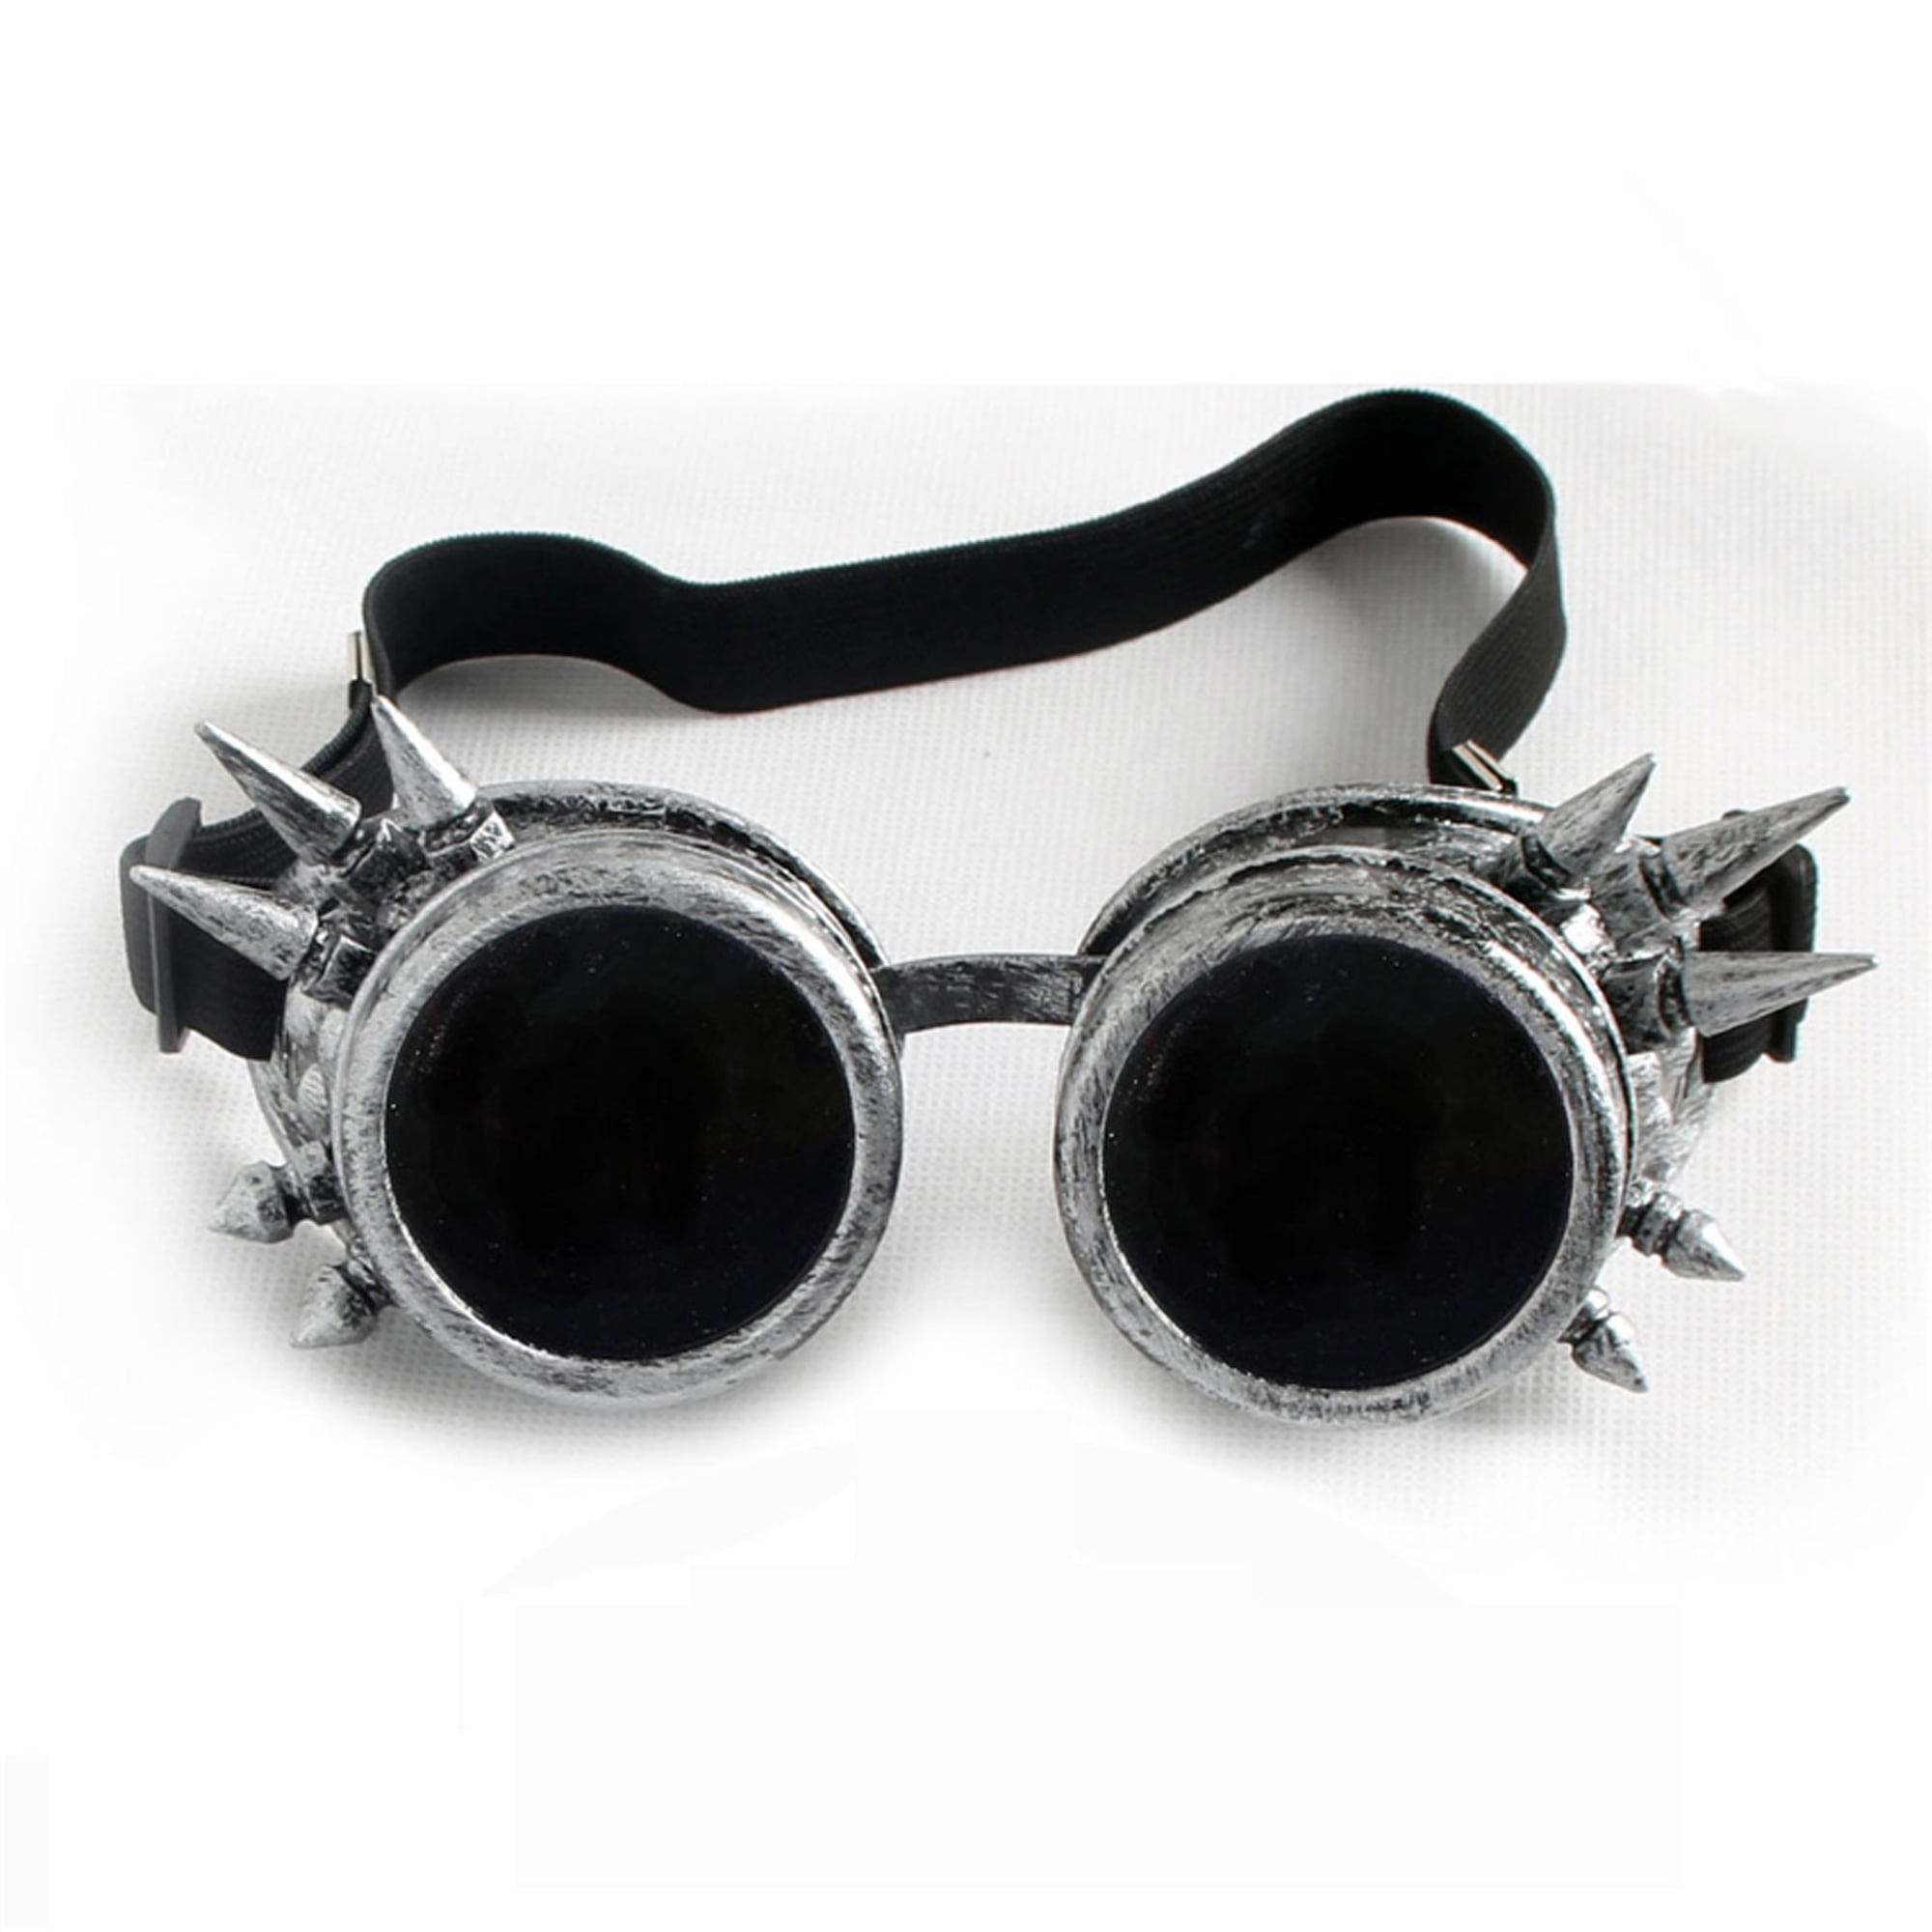 DODOING Weinlese-Art Steampunk Antique Copper Cyber Goggles Brillen Wedding Punk Goth Vintage Cosplay Brille 